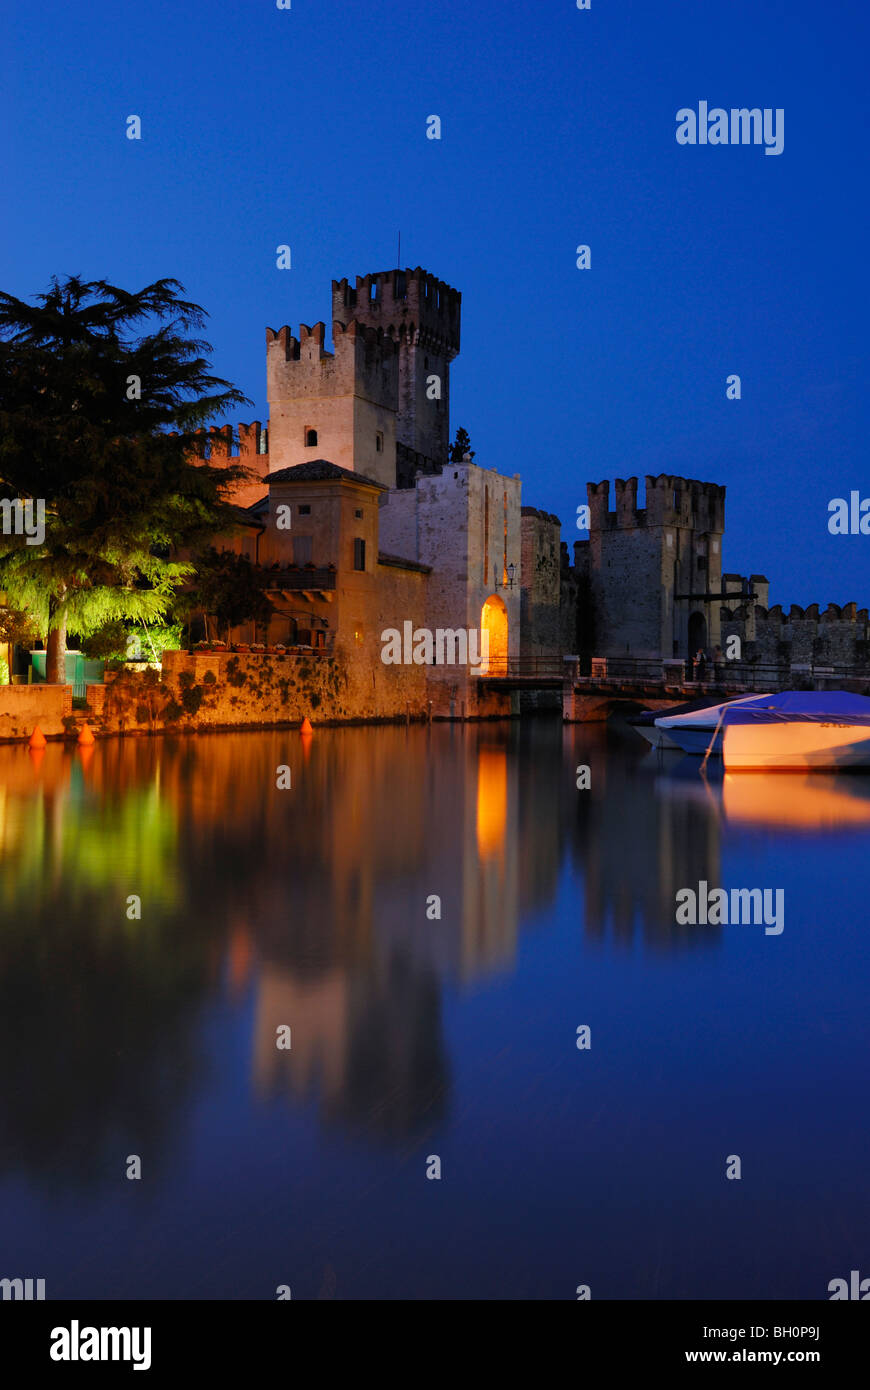 La riflessione di illuminata Castello Scaligero del lago di Garda, Sirmione, Lombardia, Italia Foto Stock